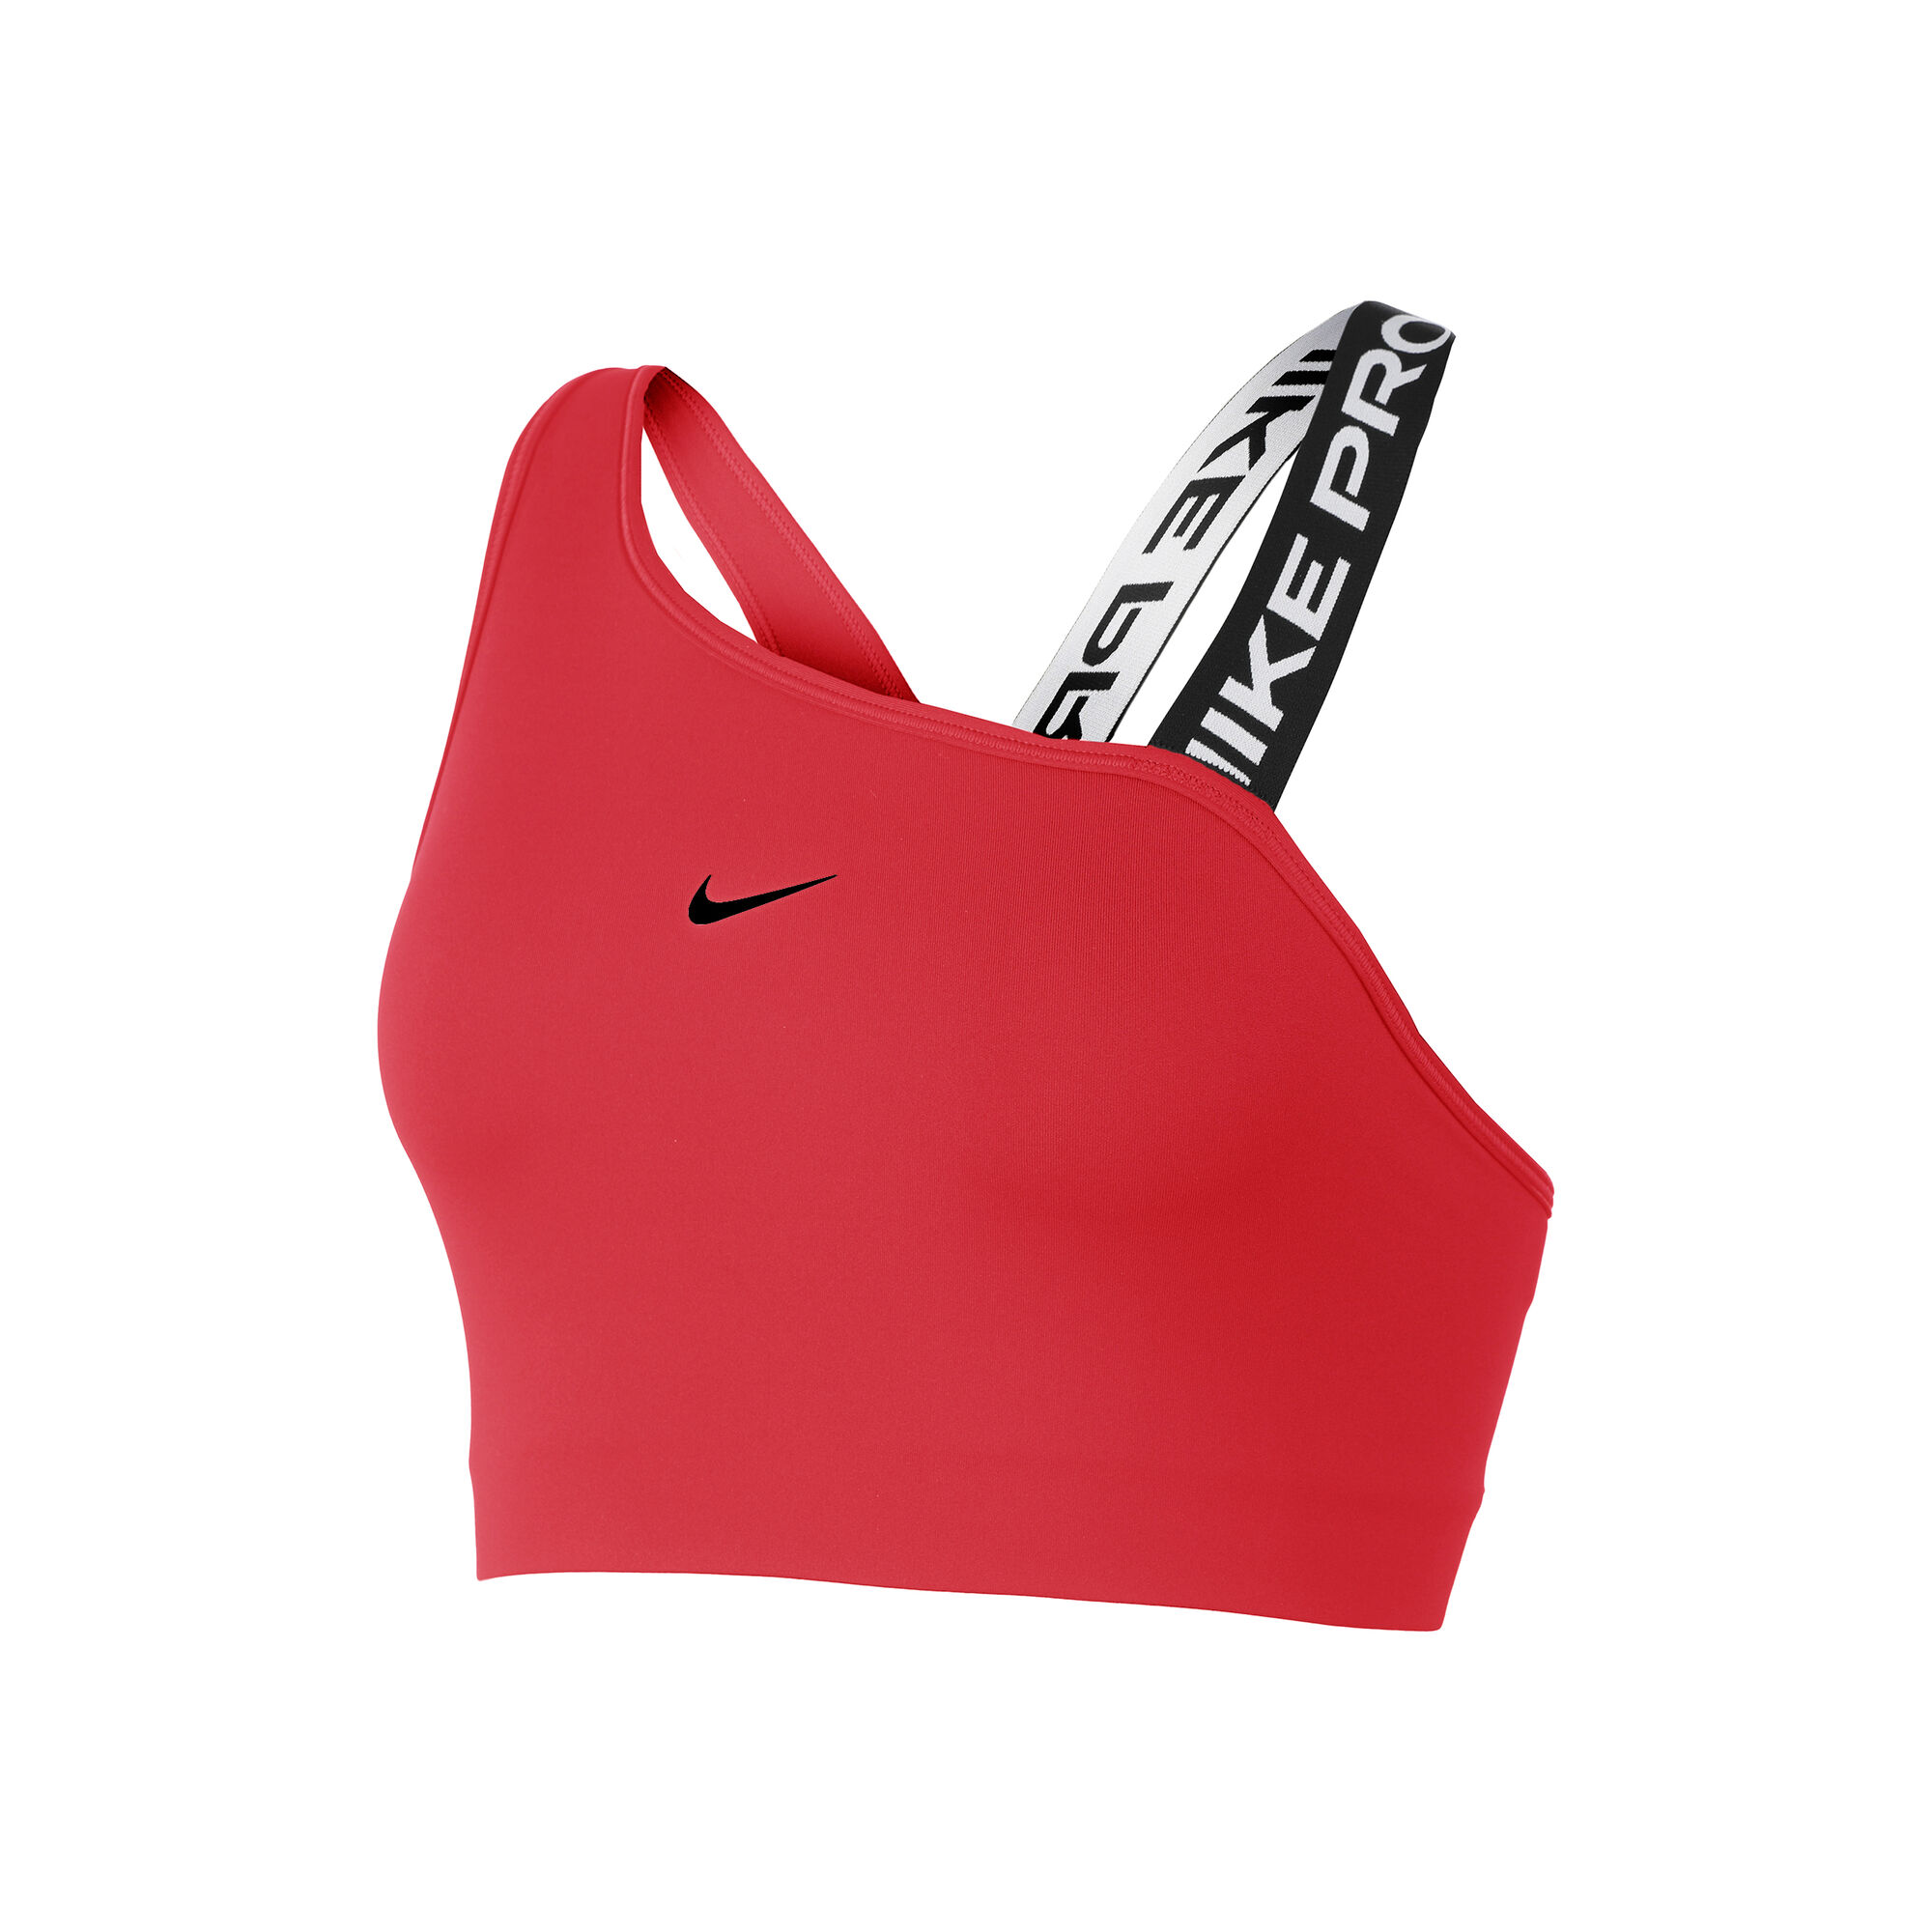 Buy Nike Dri-Fit Pro Swoosh Sports Bras Women Red, Black online